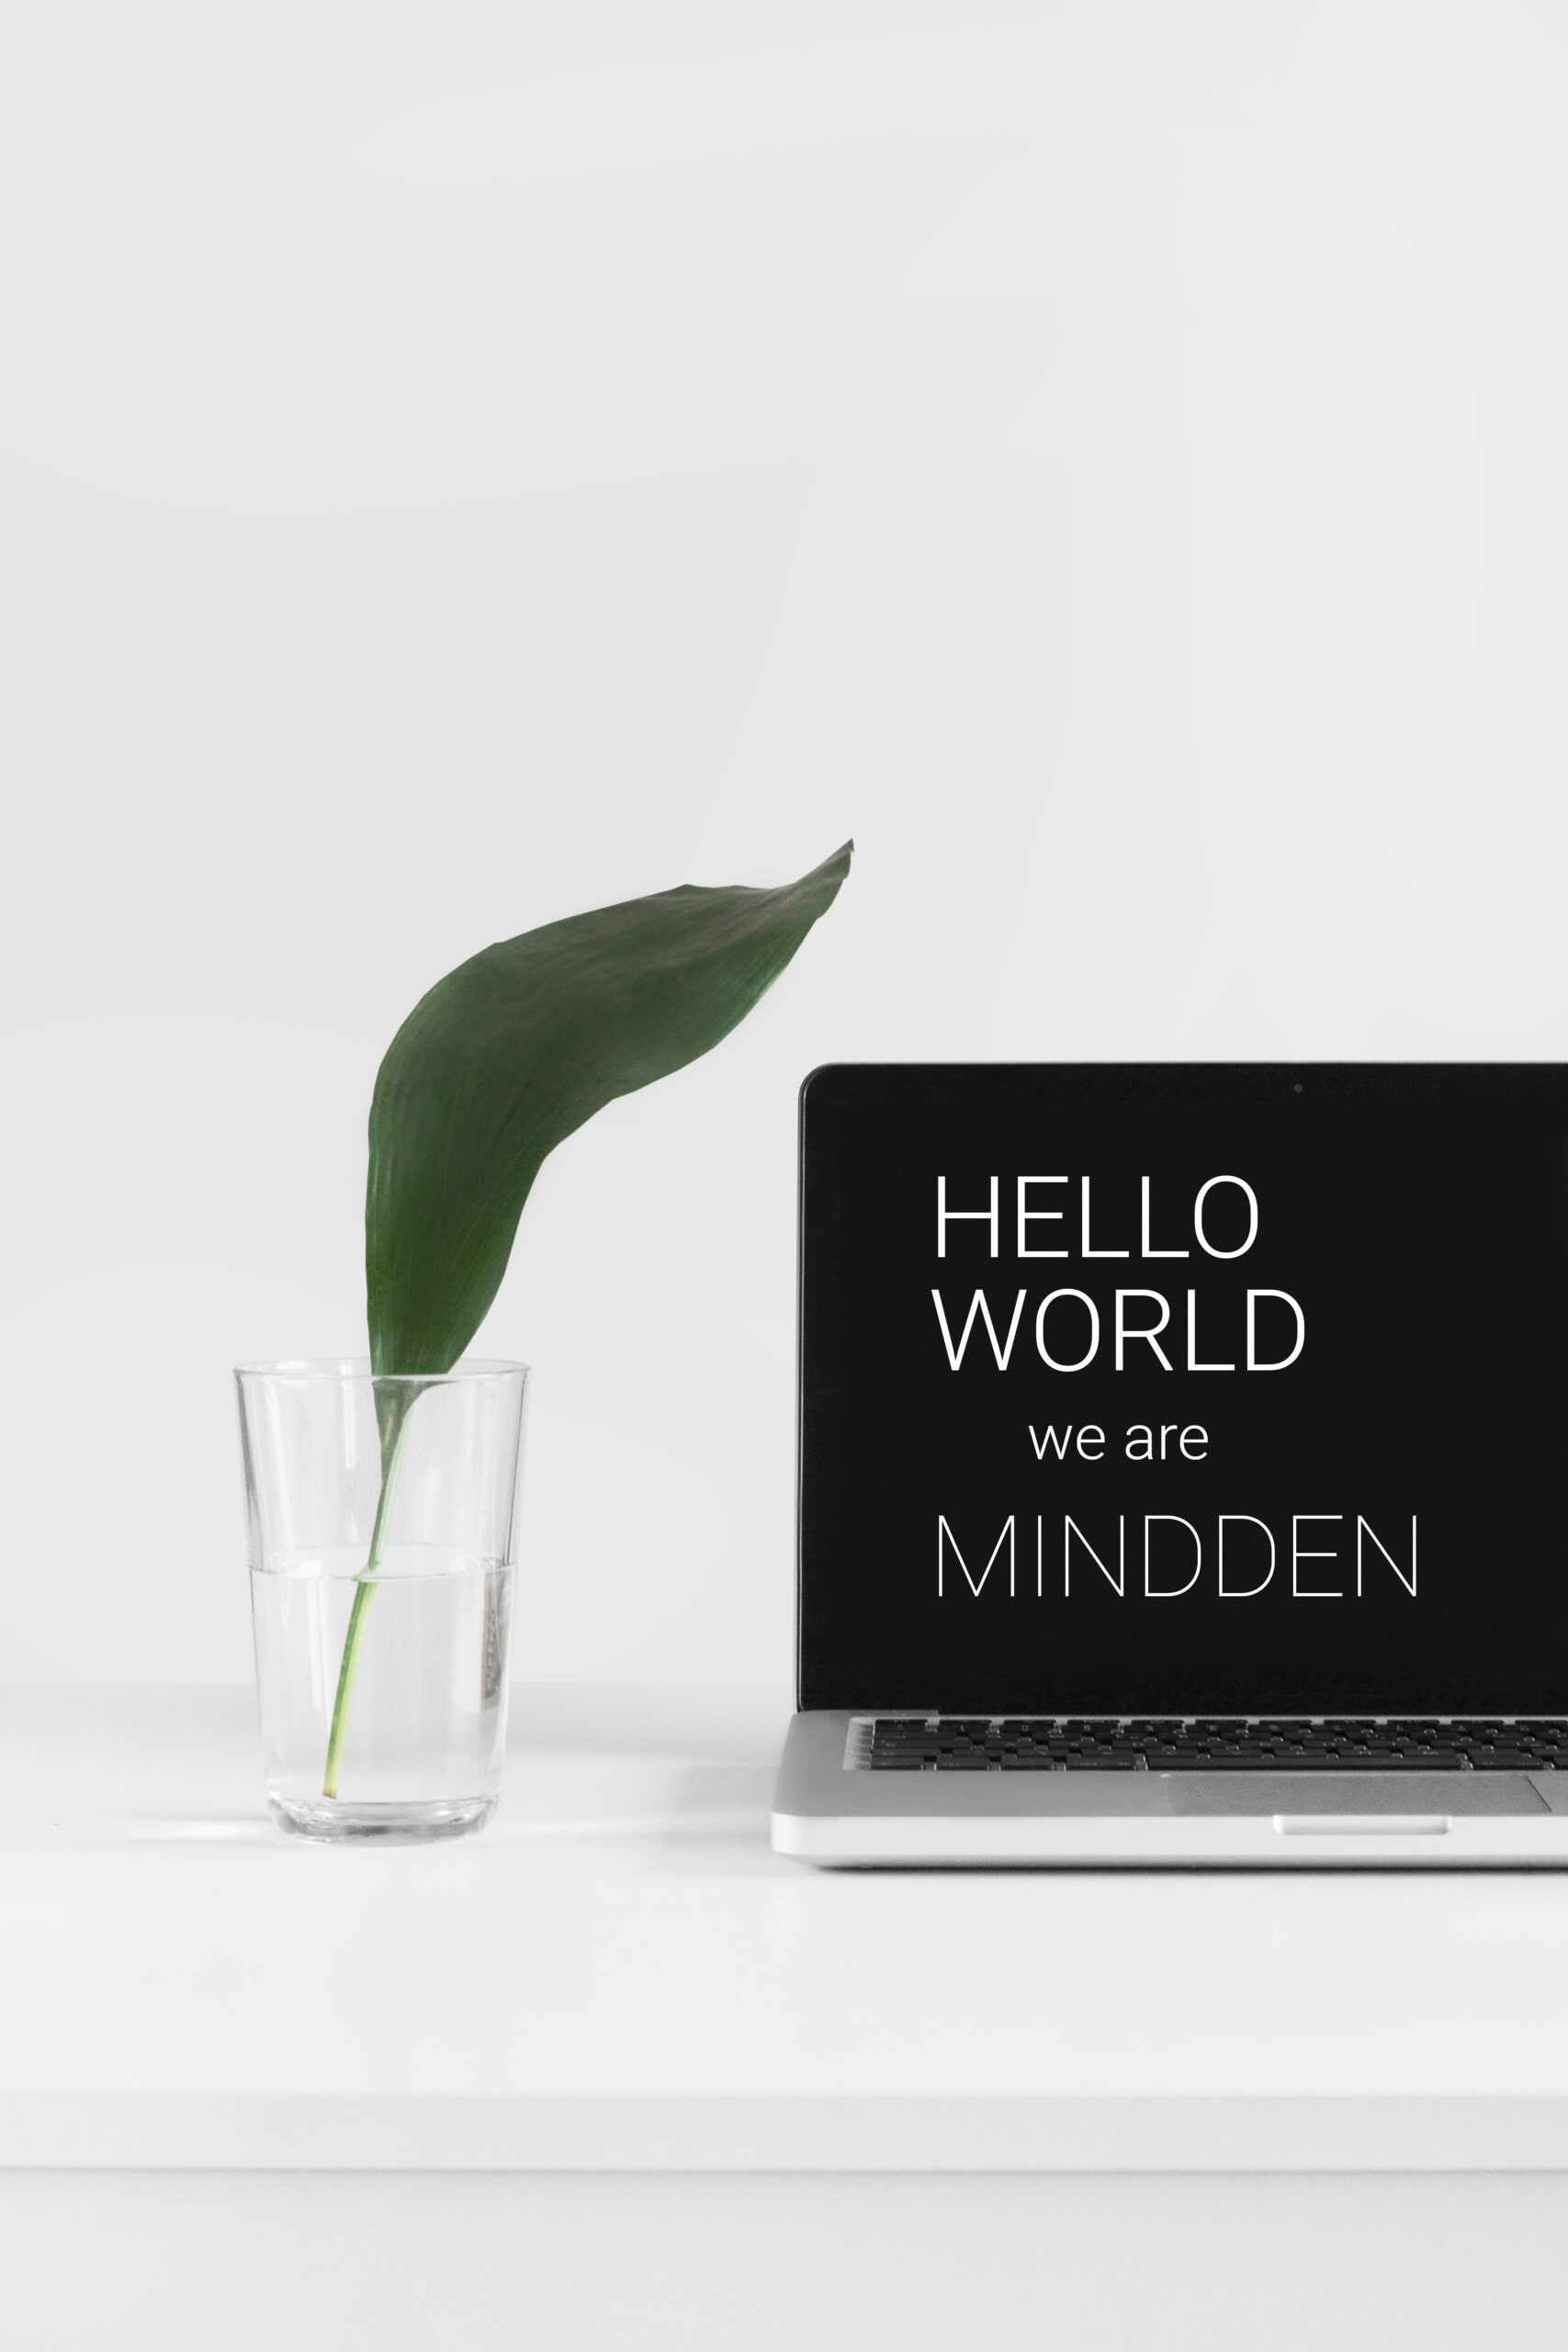 Mindden, una gran familia con más de 150 profesionales